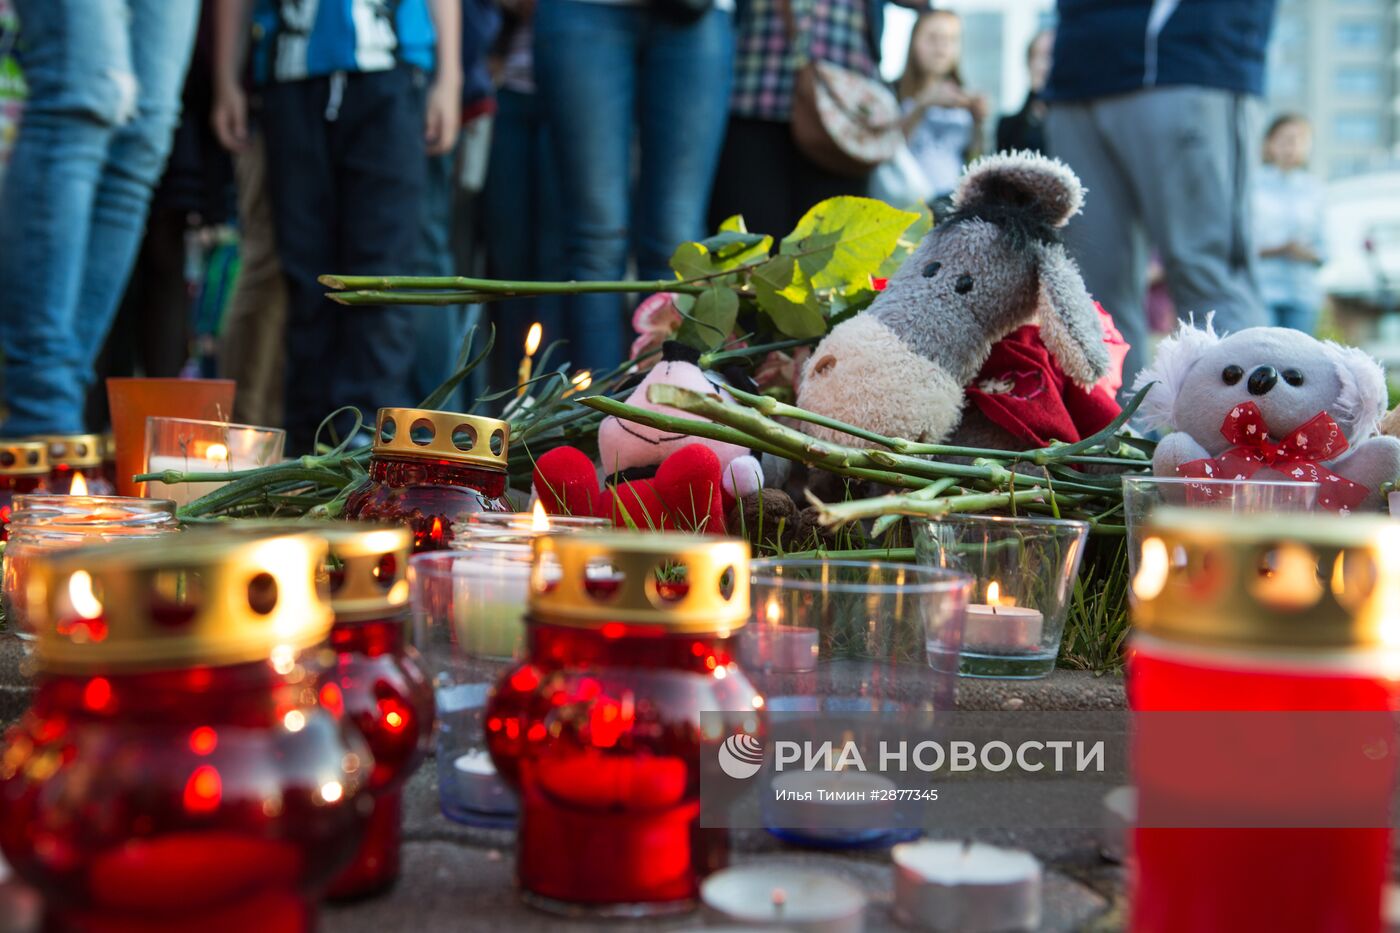 Акция в память о детях, погибших при шторме на Сямозере, в Петрозаводске